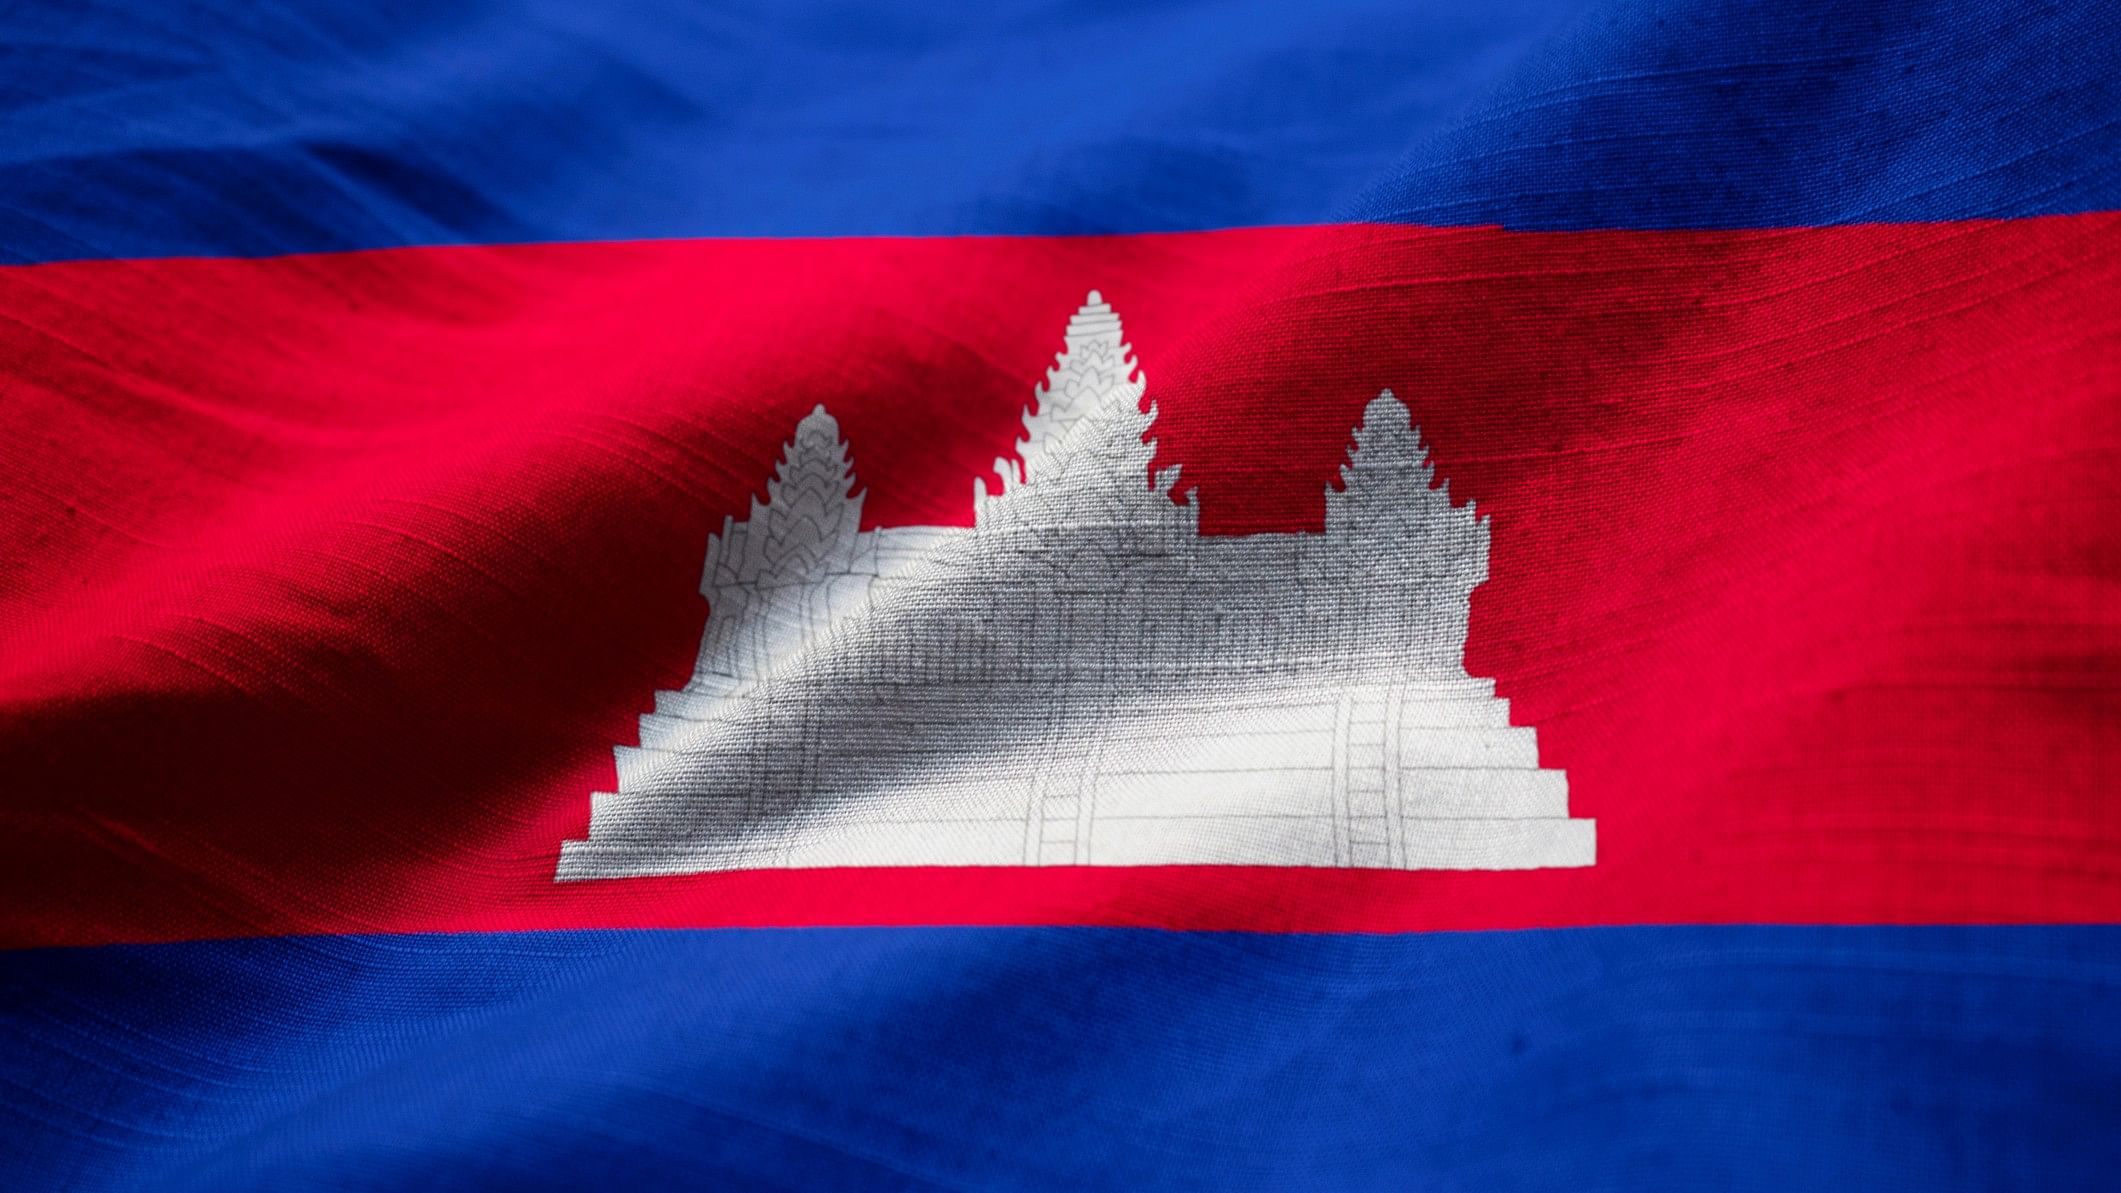 <div class="paragraphs"><p>Cambodia Flag.</p></div>